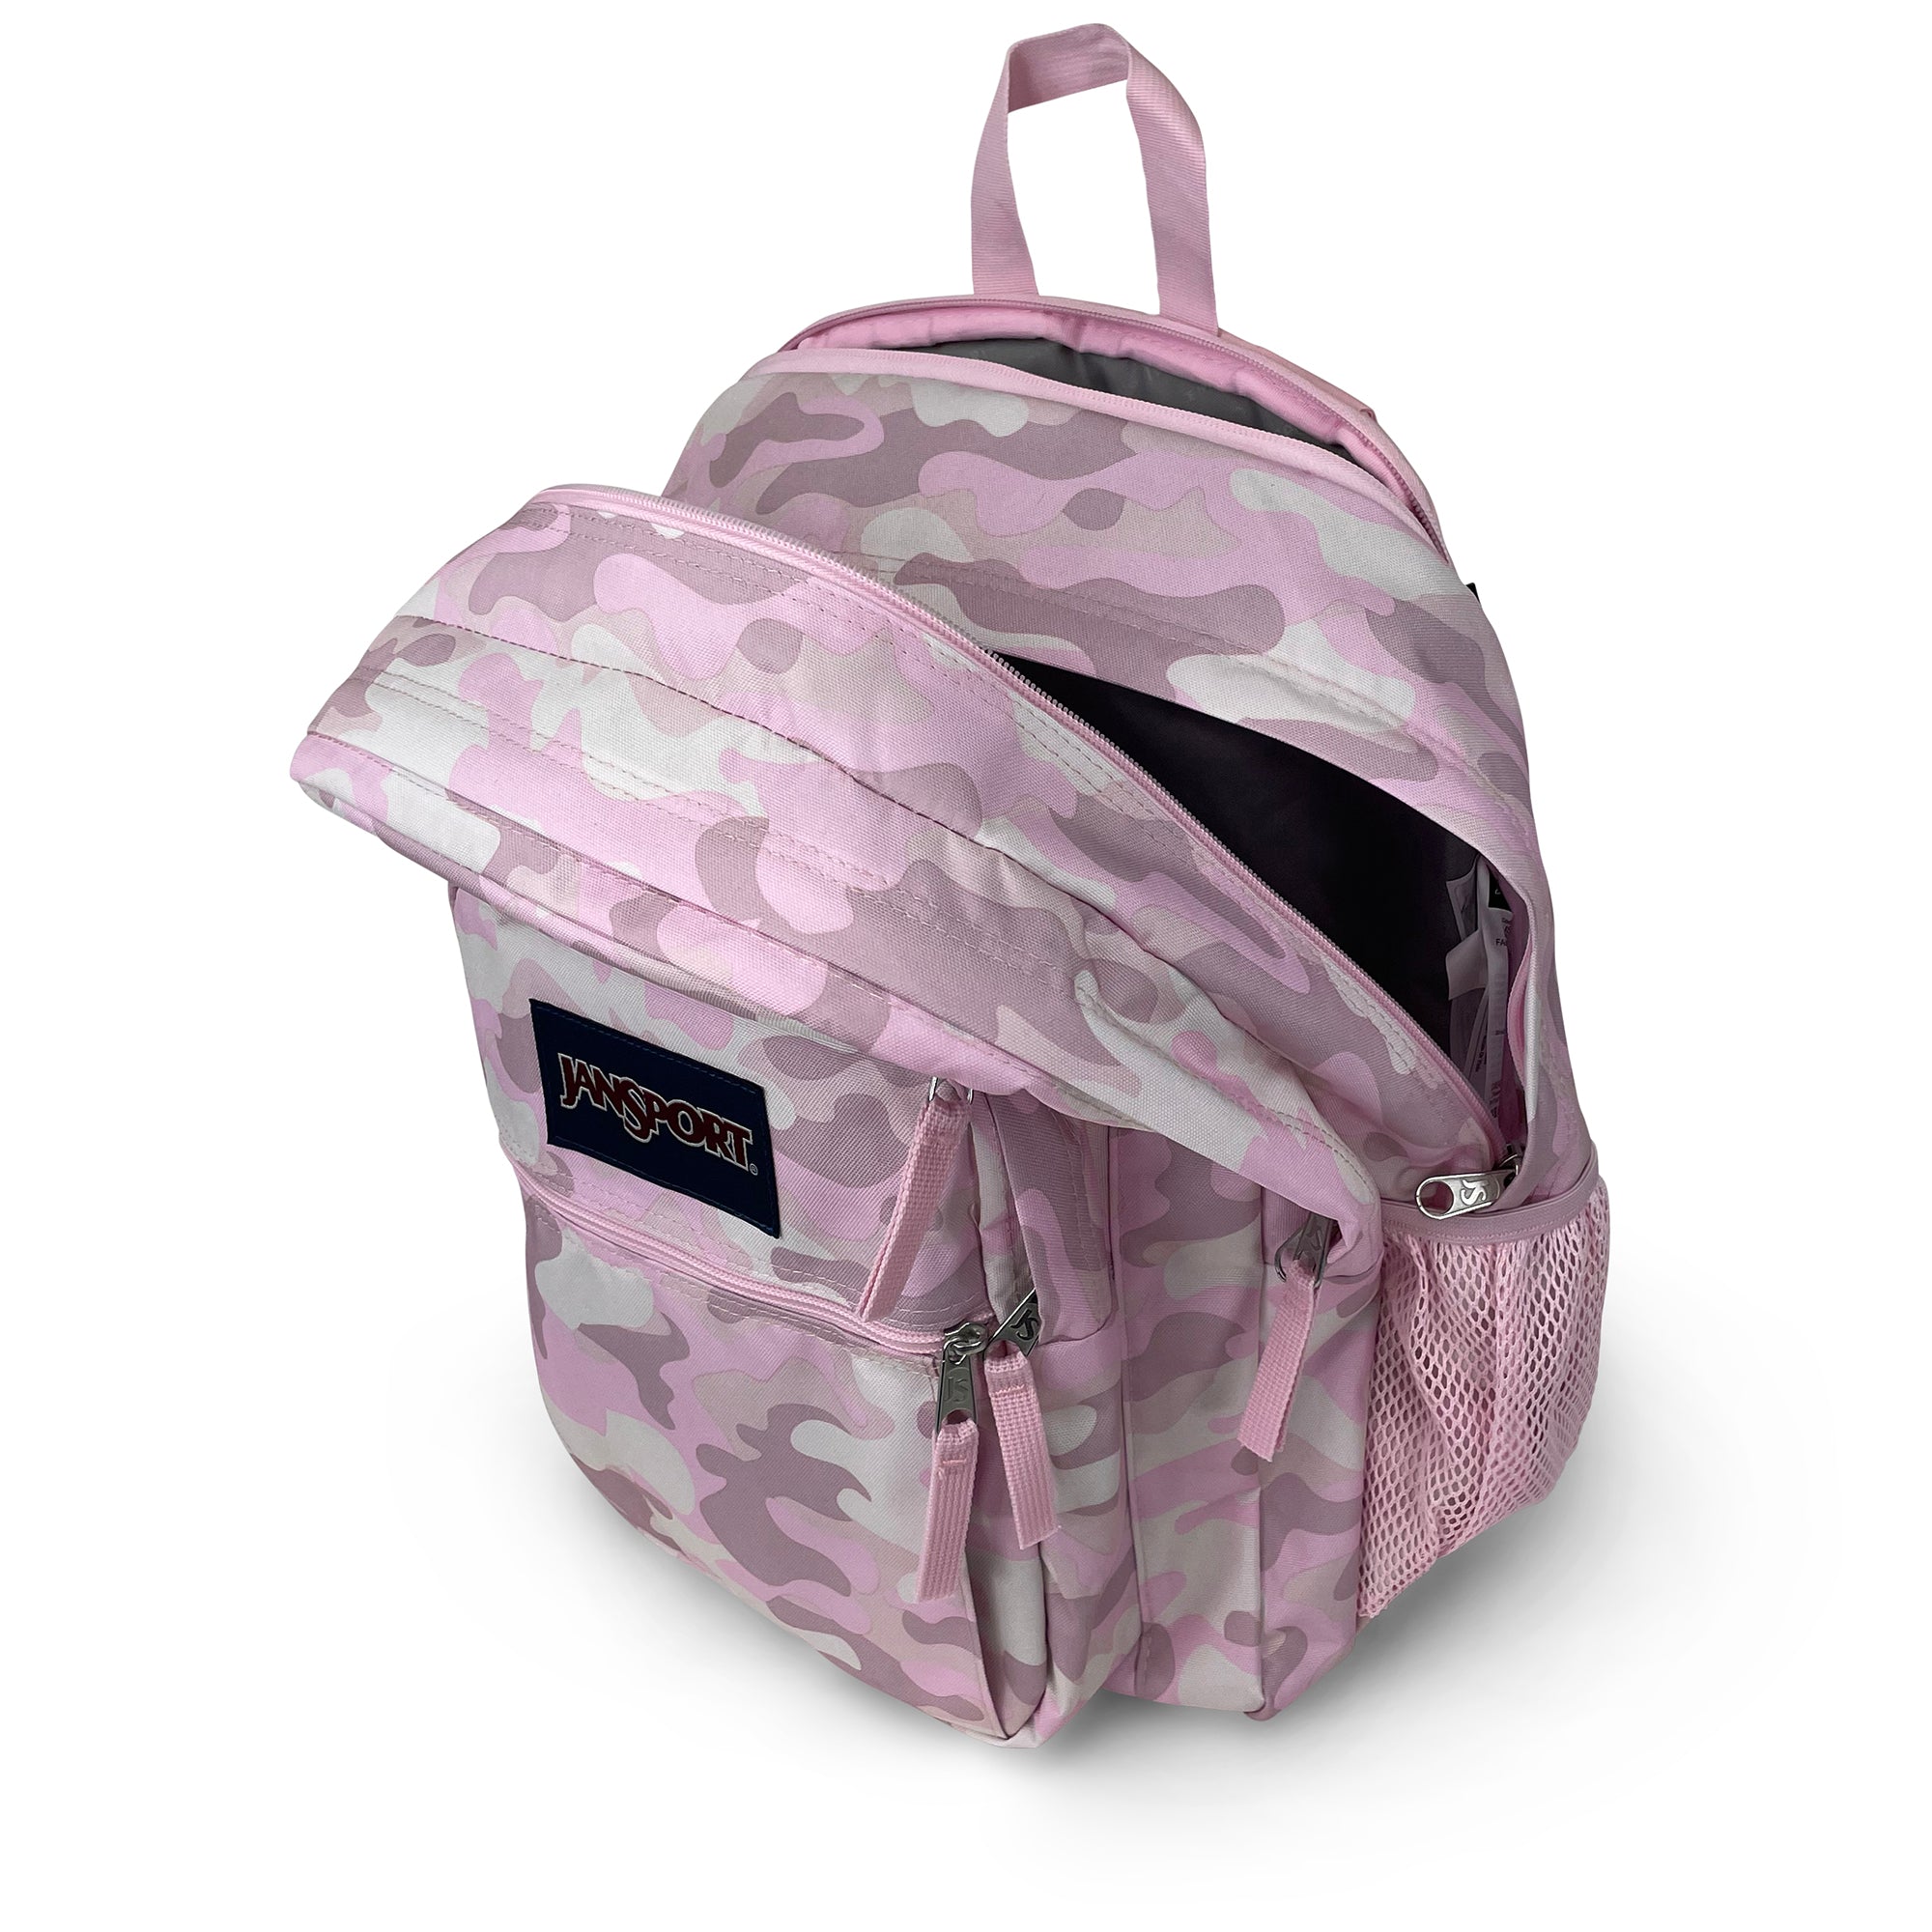 Big Student Backpack-Backpack-Jansport-Cotton Candy-SchoolBagsAndStuff